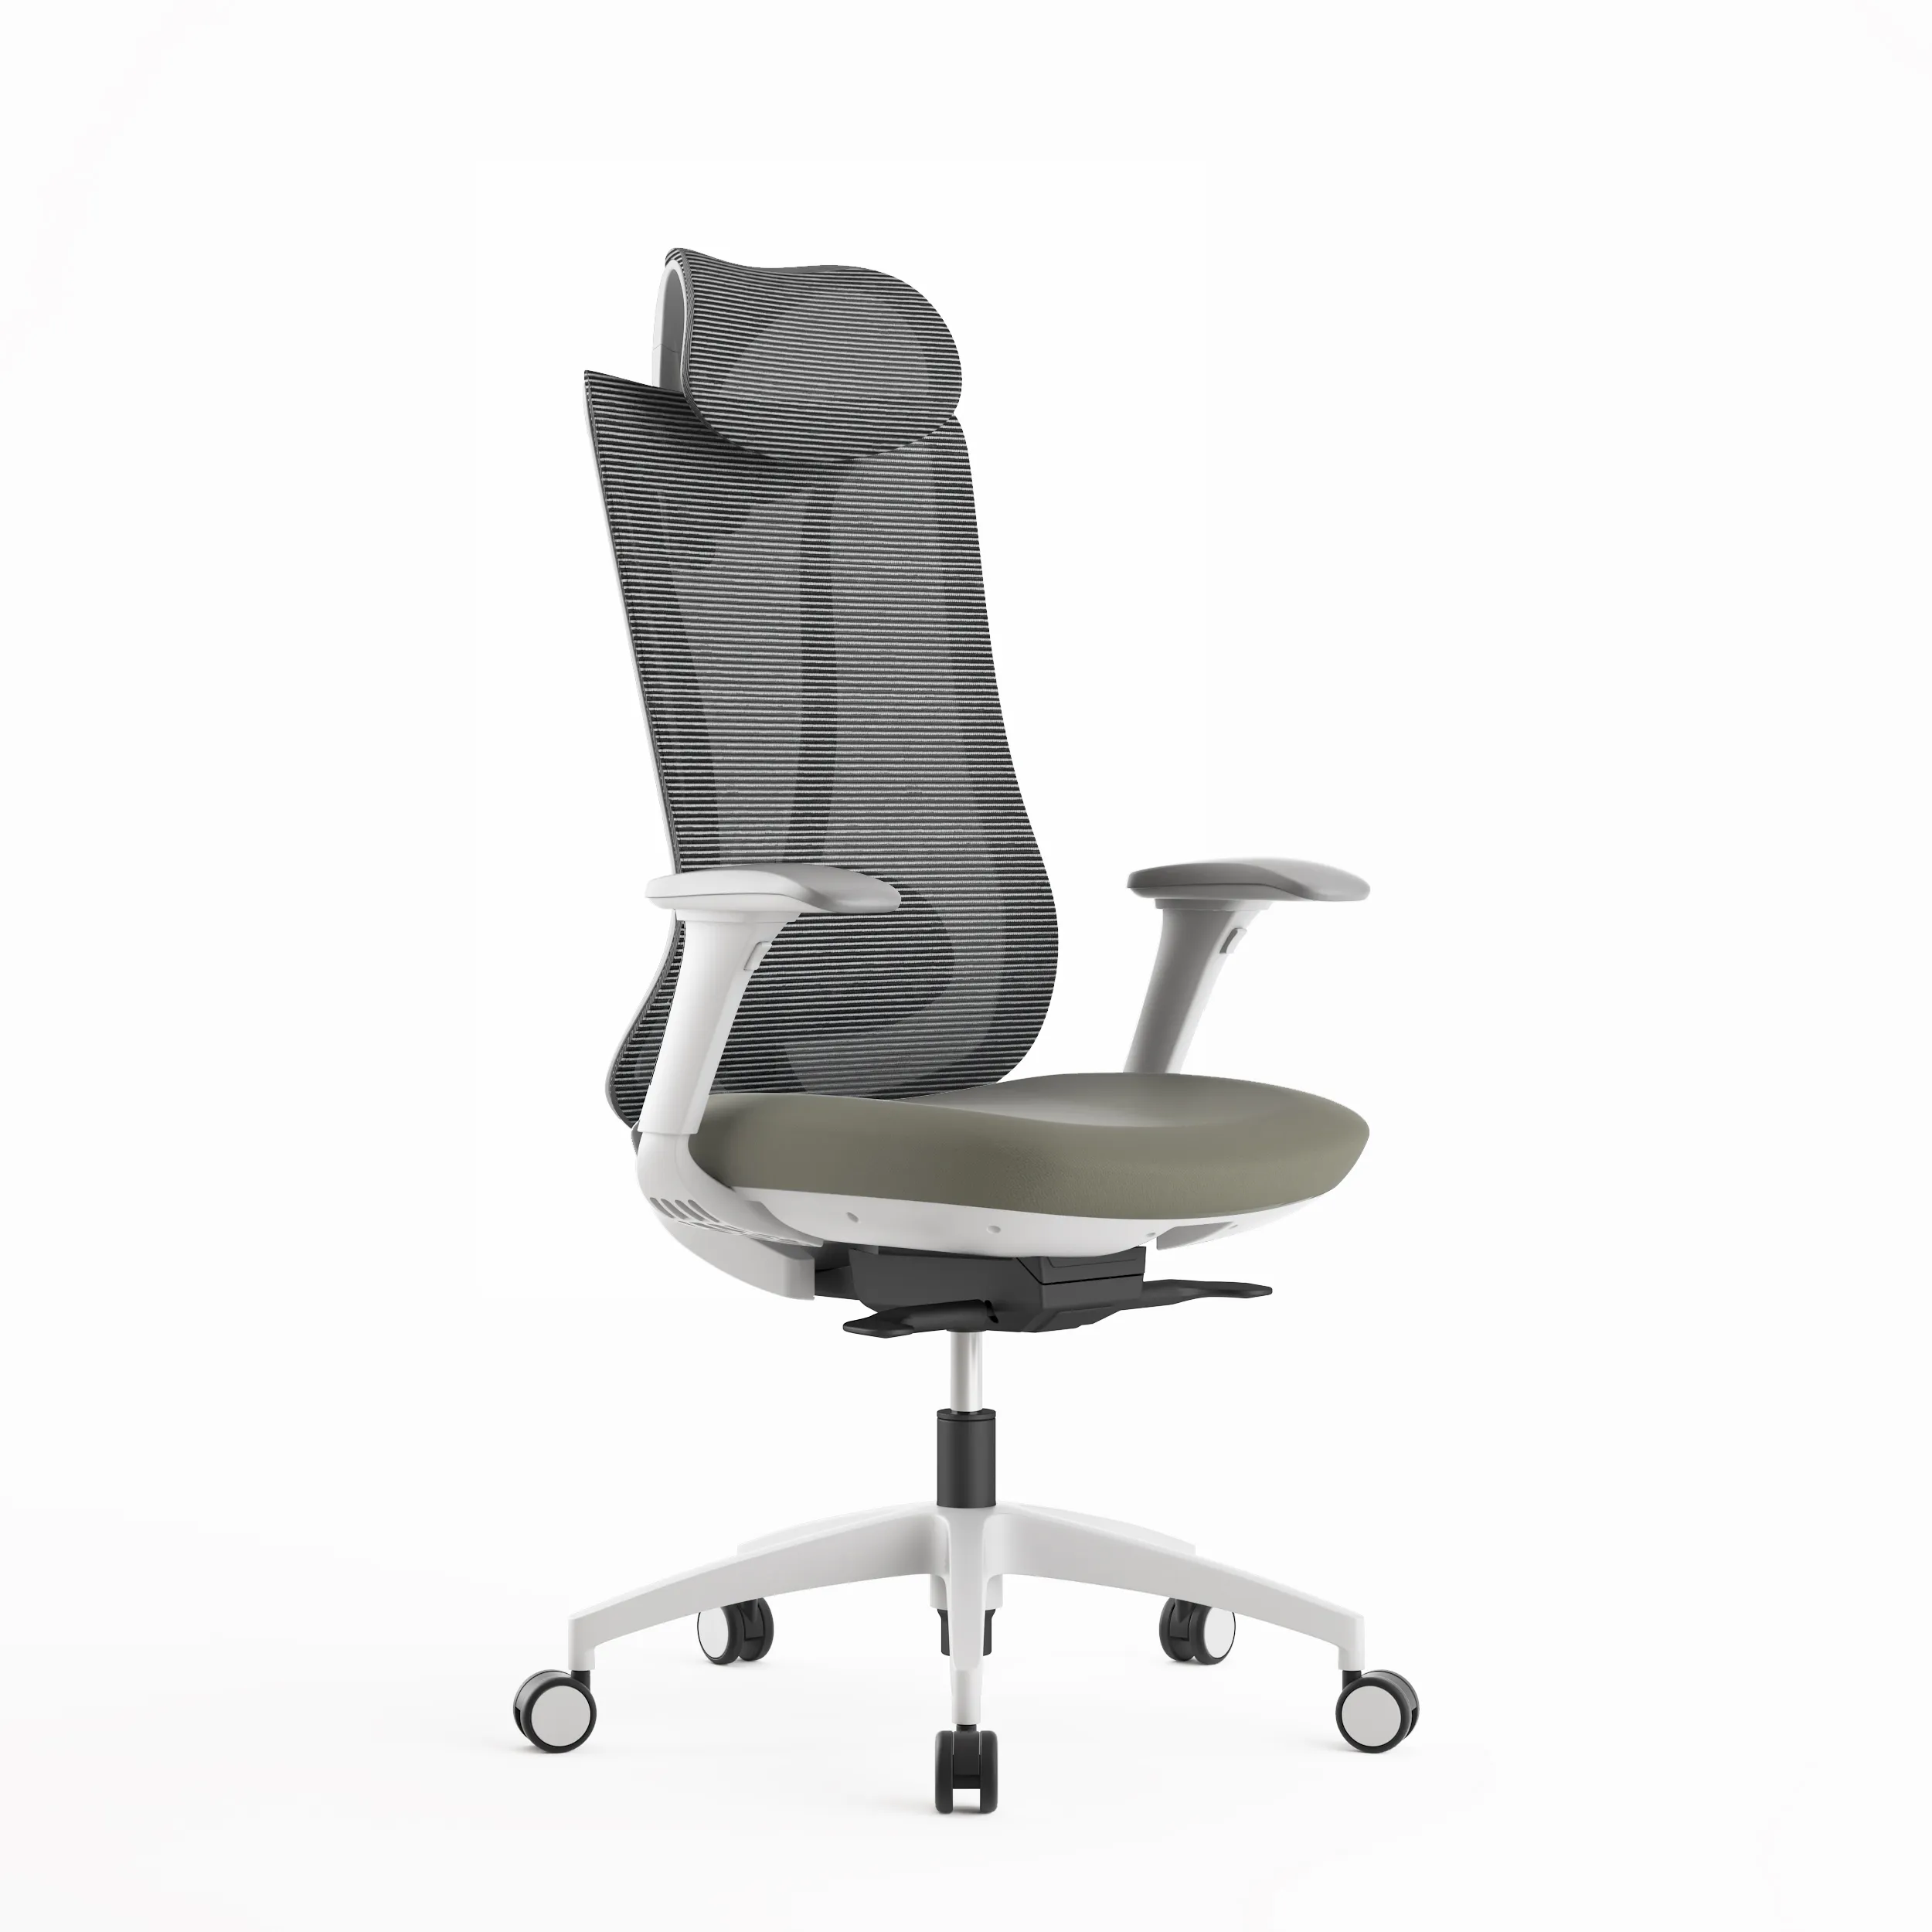 Kursi kantor ergonomis dengan aktivasi, rotasi 360 derajat nyaman desain Modern besar dan tinggi, Meja rumah eksekutif, jaring belakang tinggi